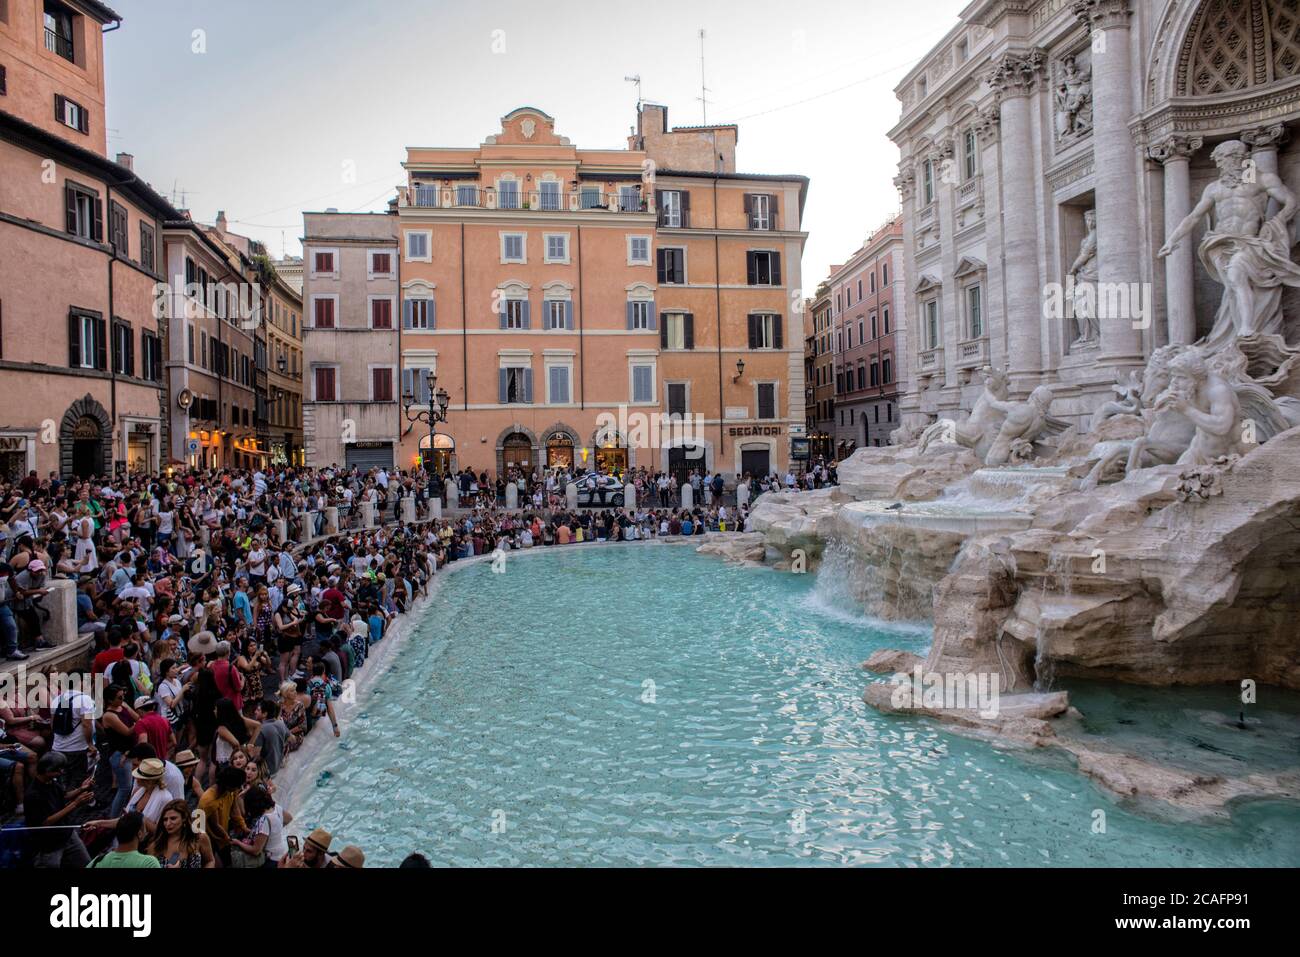 Europa - Italia, capital Roma: Turismo en la Fontana de Trevi, que es uno de los lugares más populares de Roma. Foto de stock